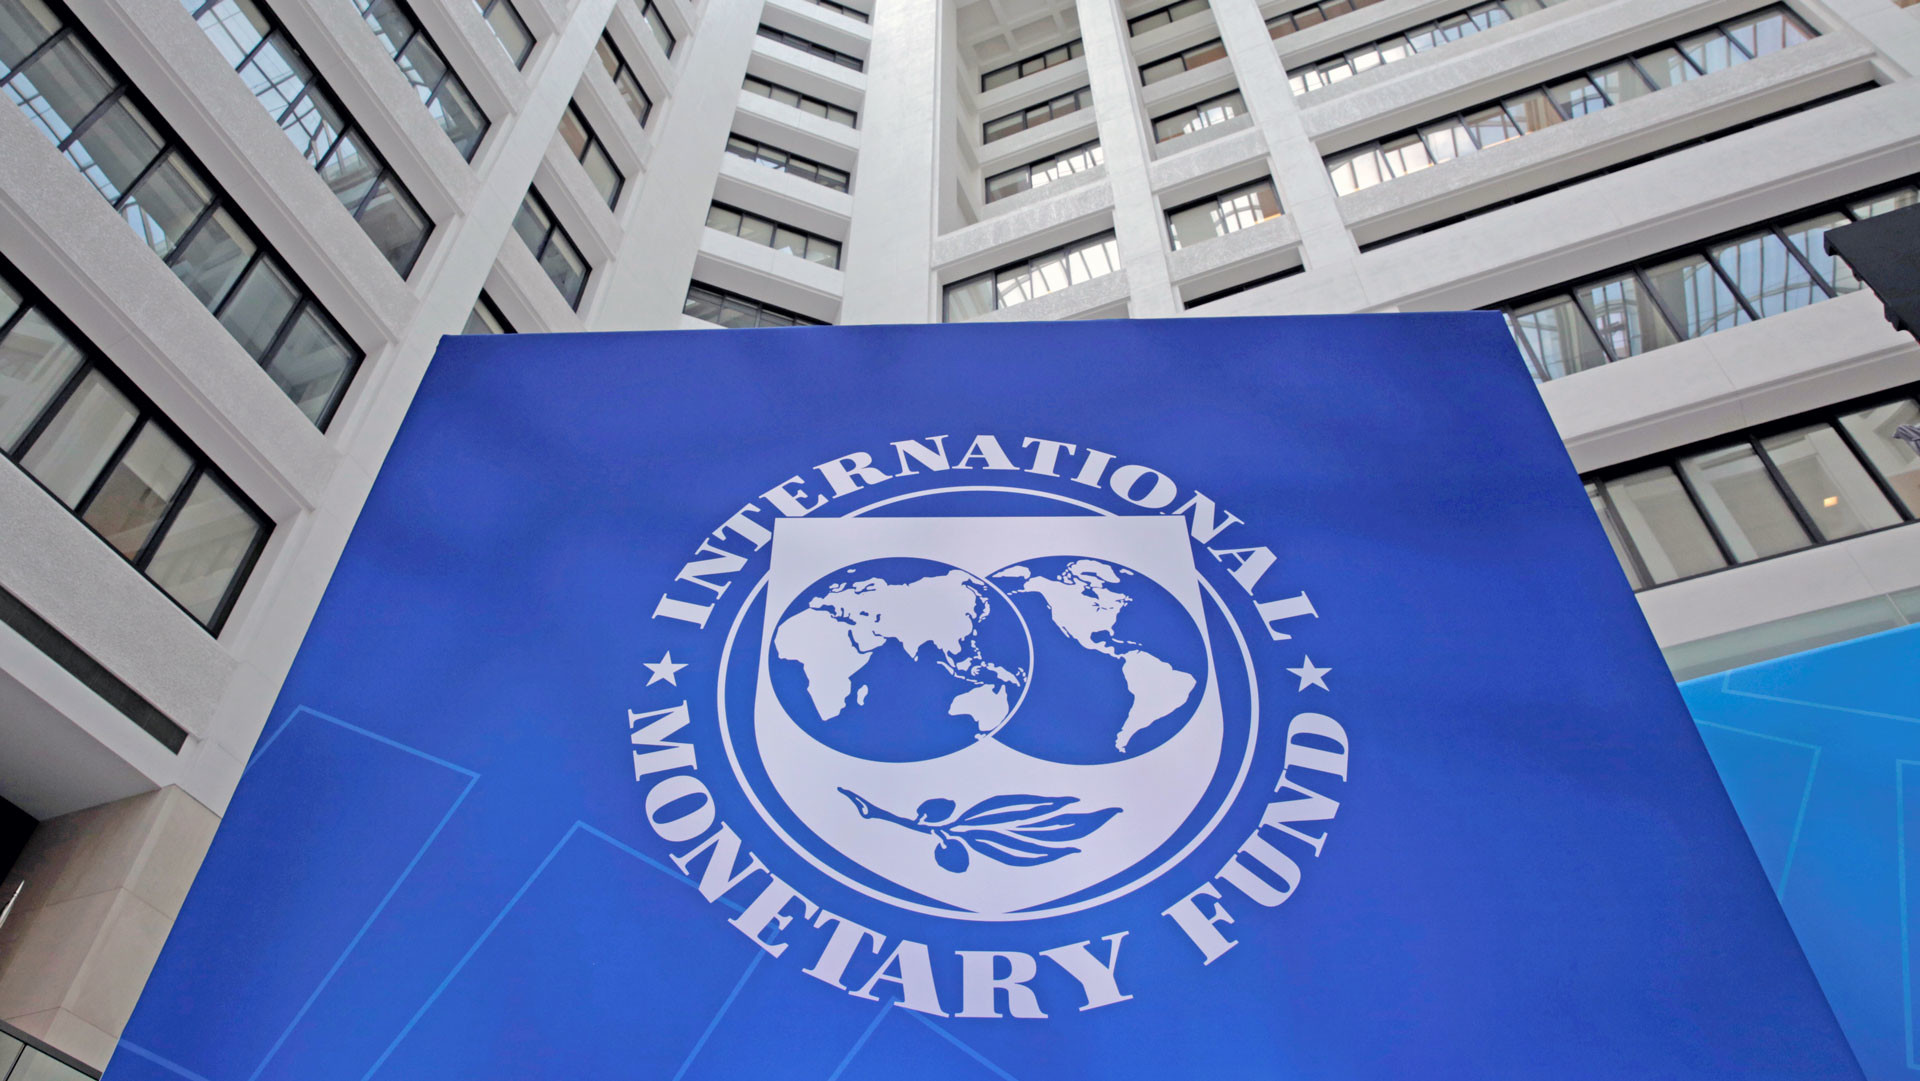 Expectativas de crecimiento para América Latina son más bajas de lo esperando según FMI